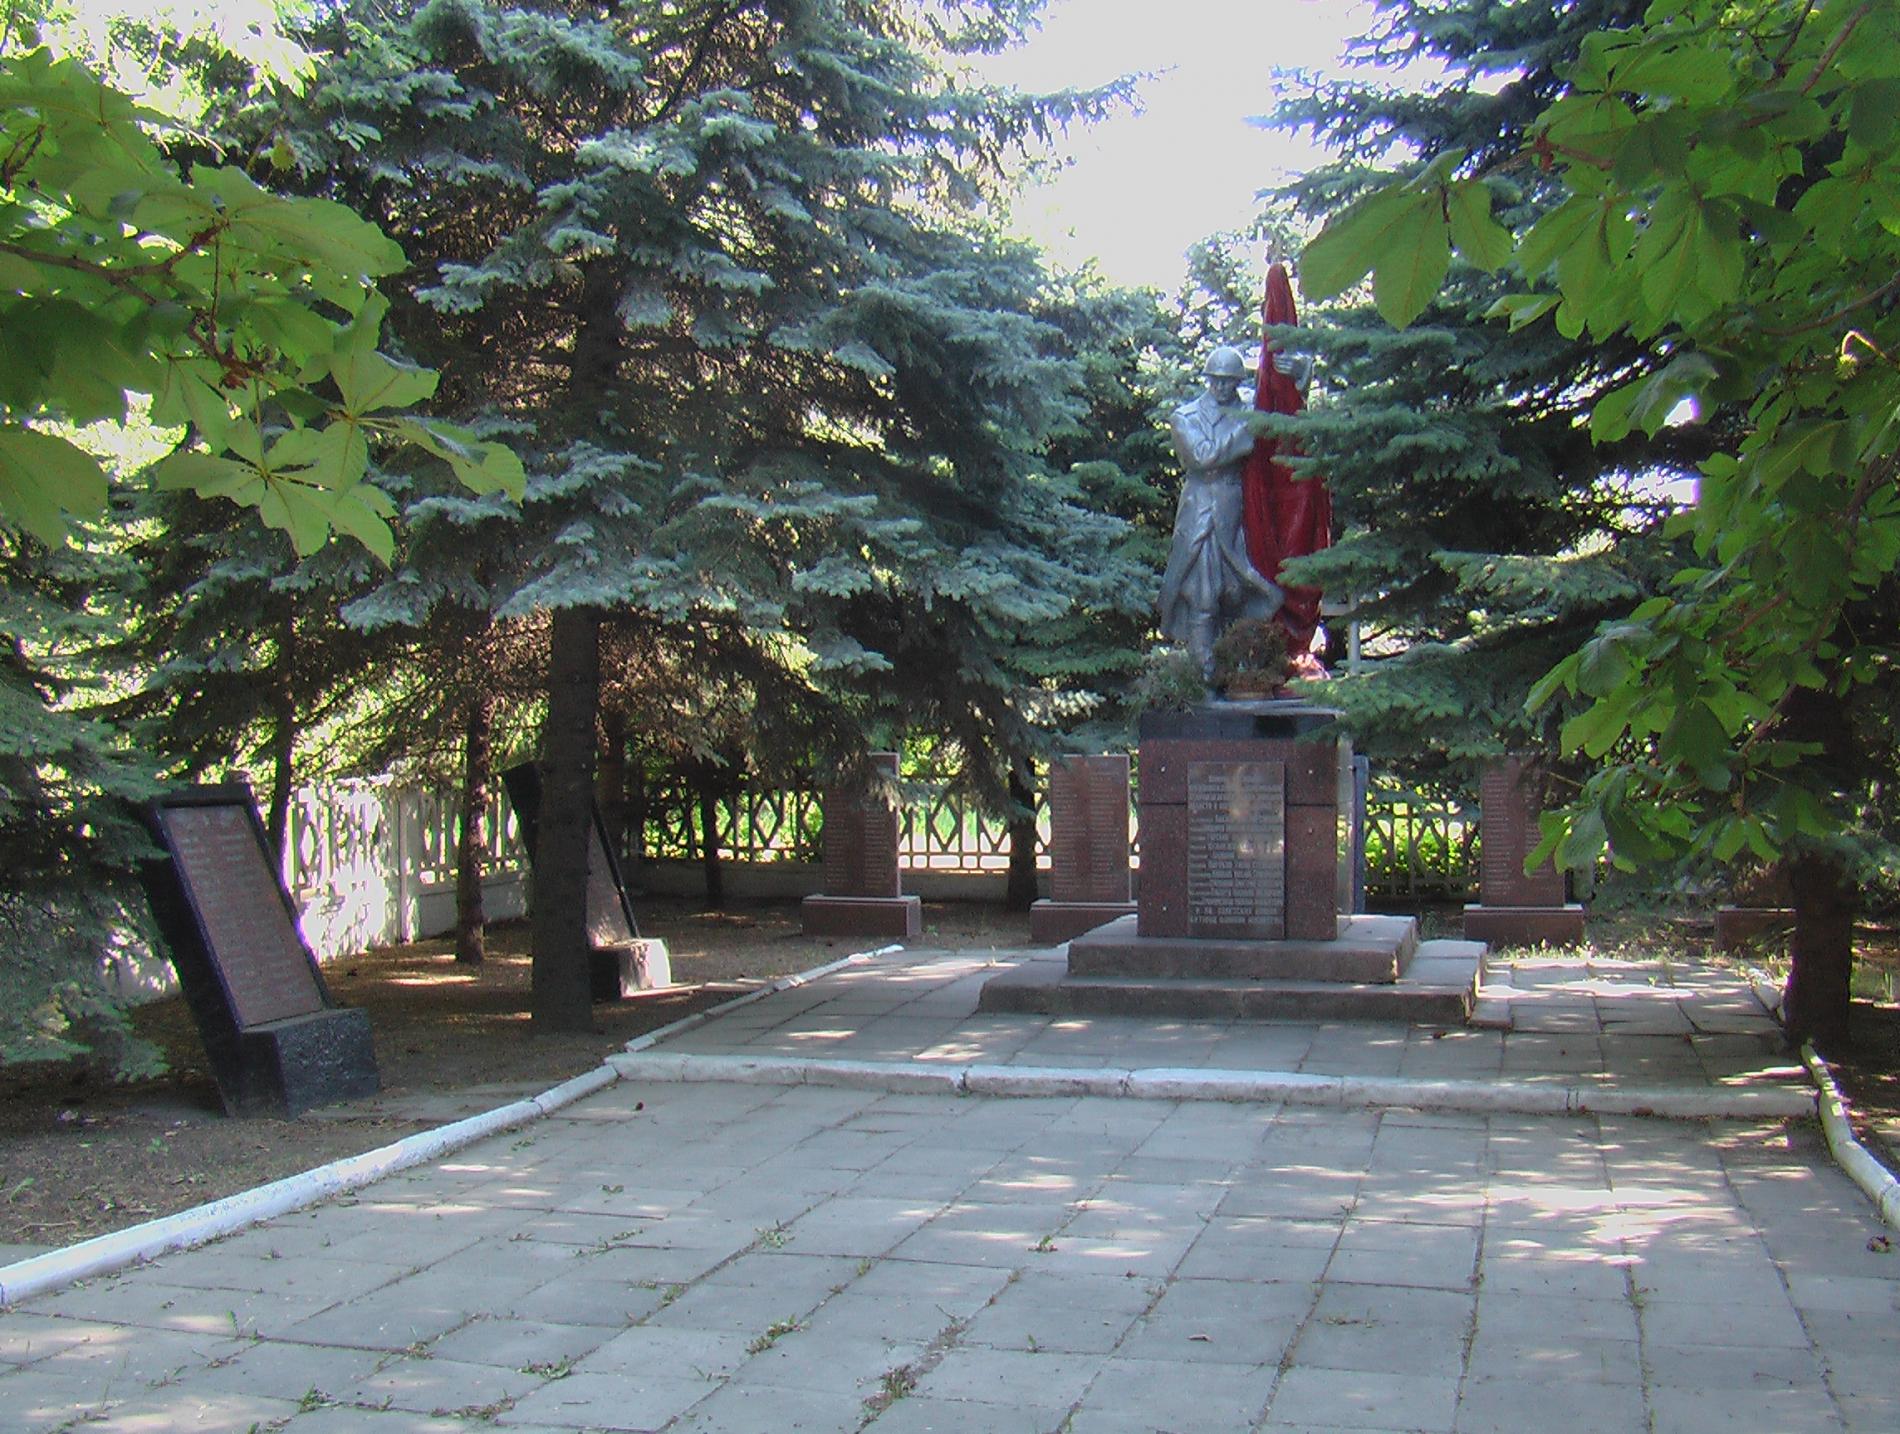 Братская могила в г. Комсомольское Старобешевского района